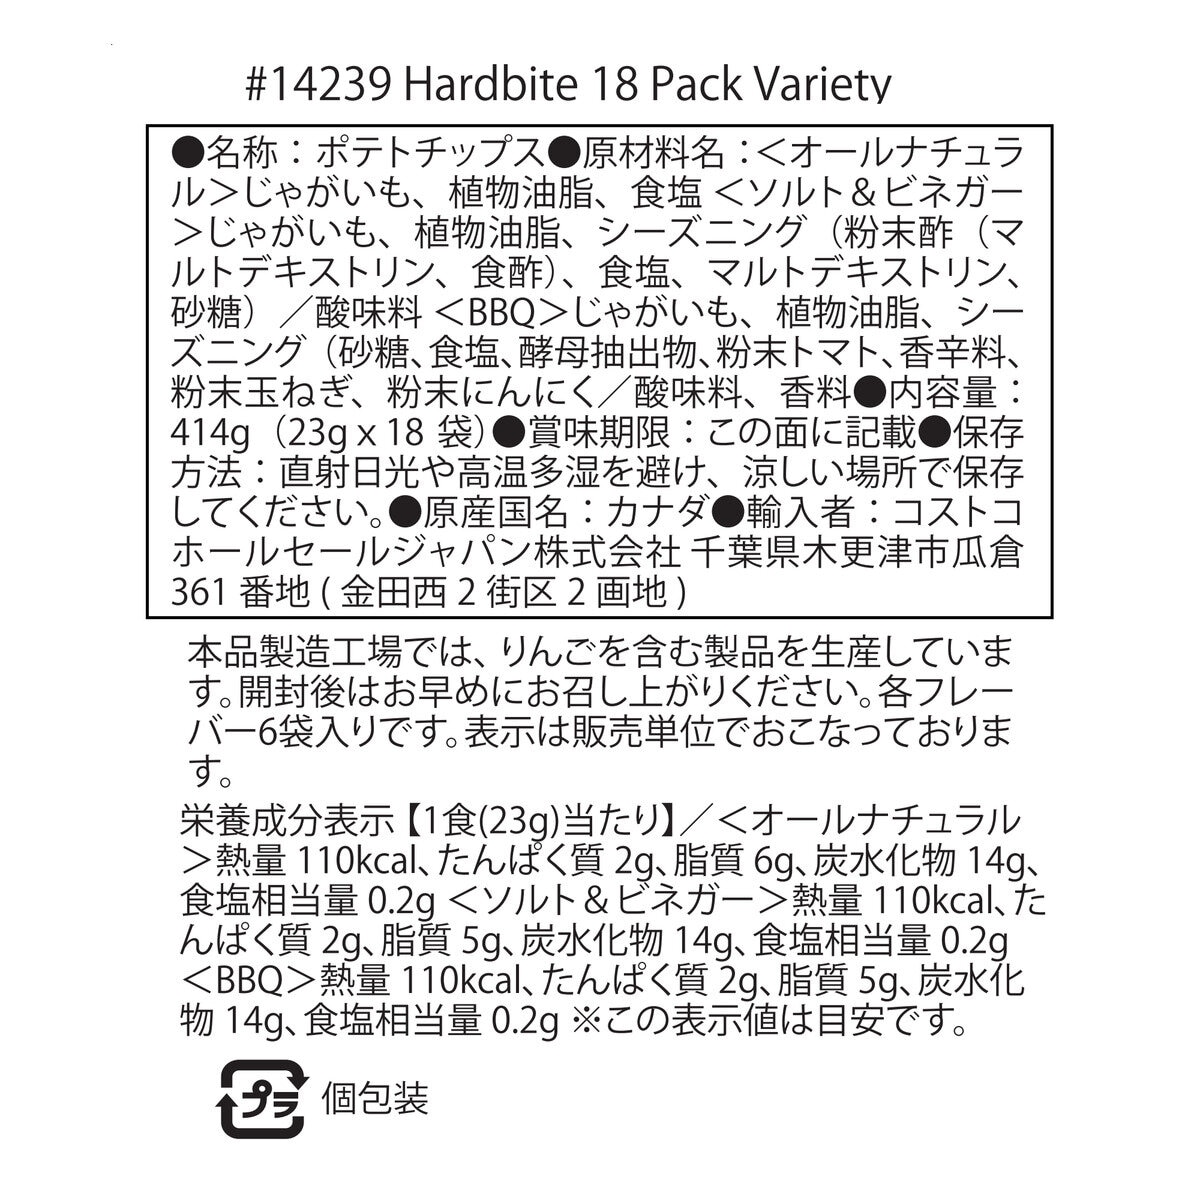 ハードバイト ポテトチップス バラエティパック 23g x 18pack